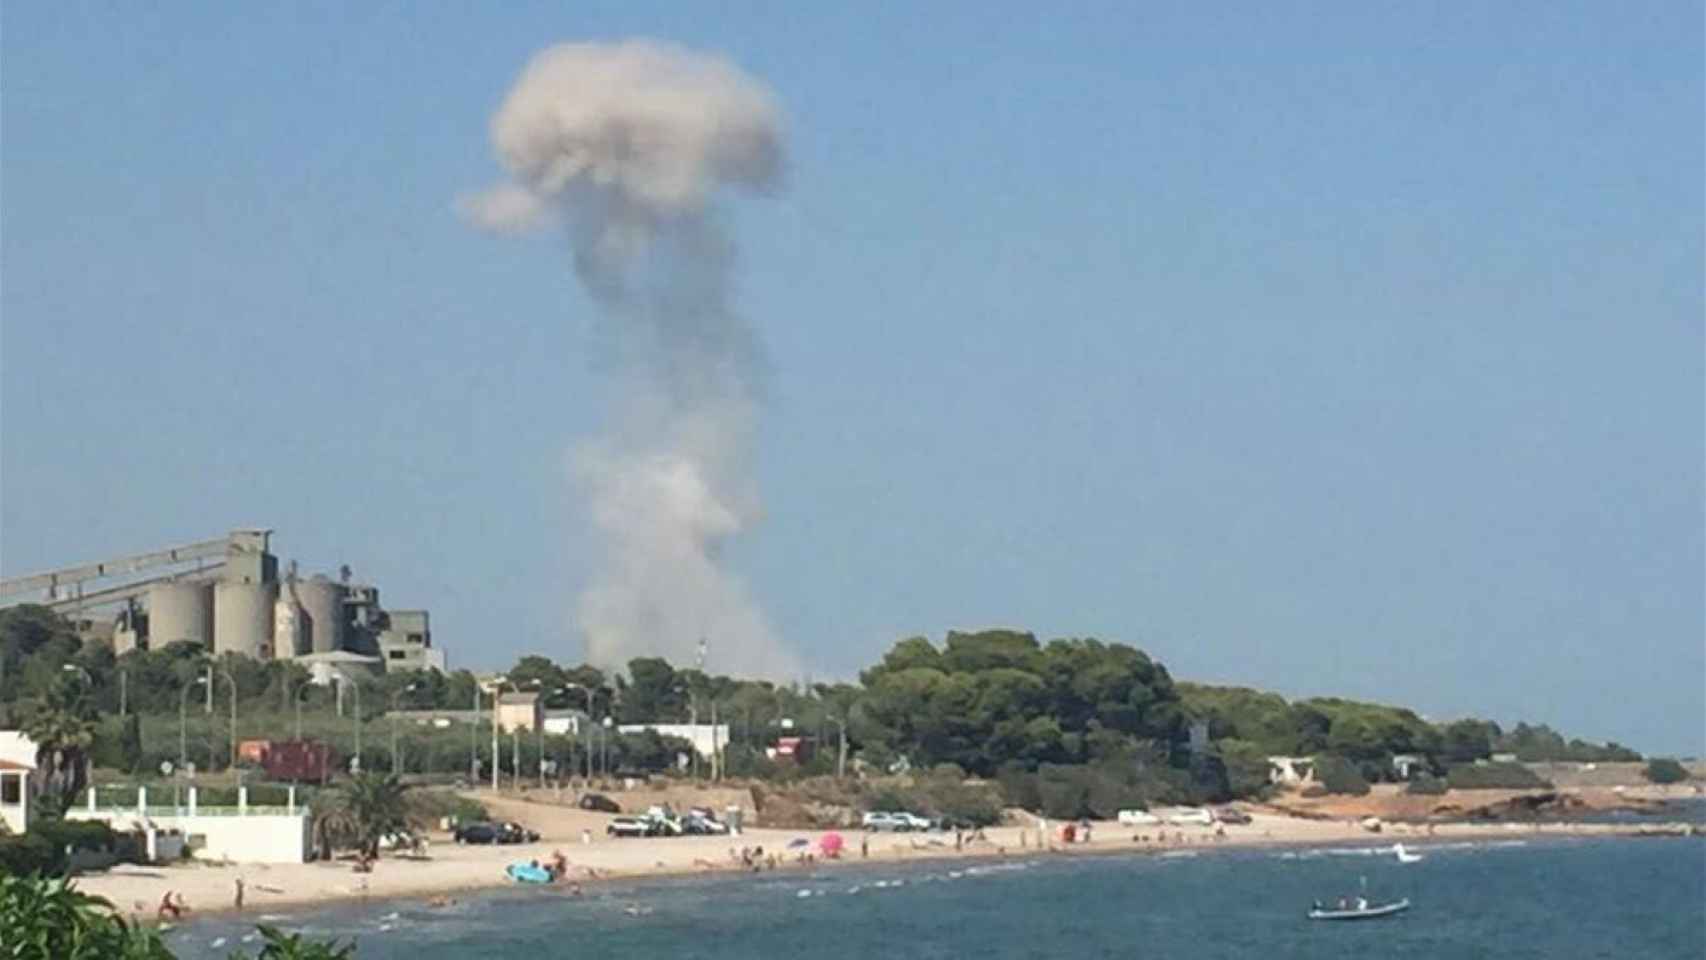 Columna de humo que se veía en la playa tras la explosión de las bombonas